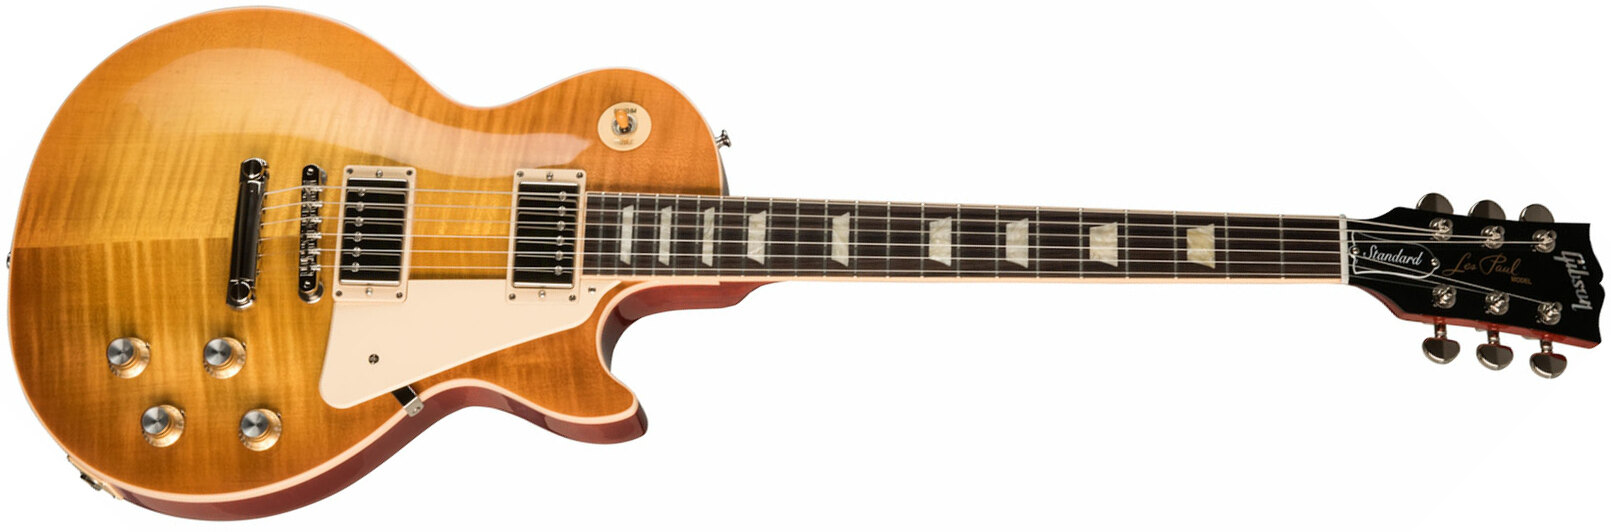 Gibson Les Paul Standard 60s Original 2h Ht Rw - Unburst - Guitarra eléctrica de corte único. - Main picture